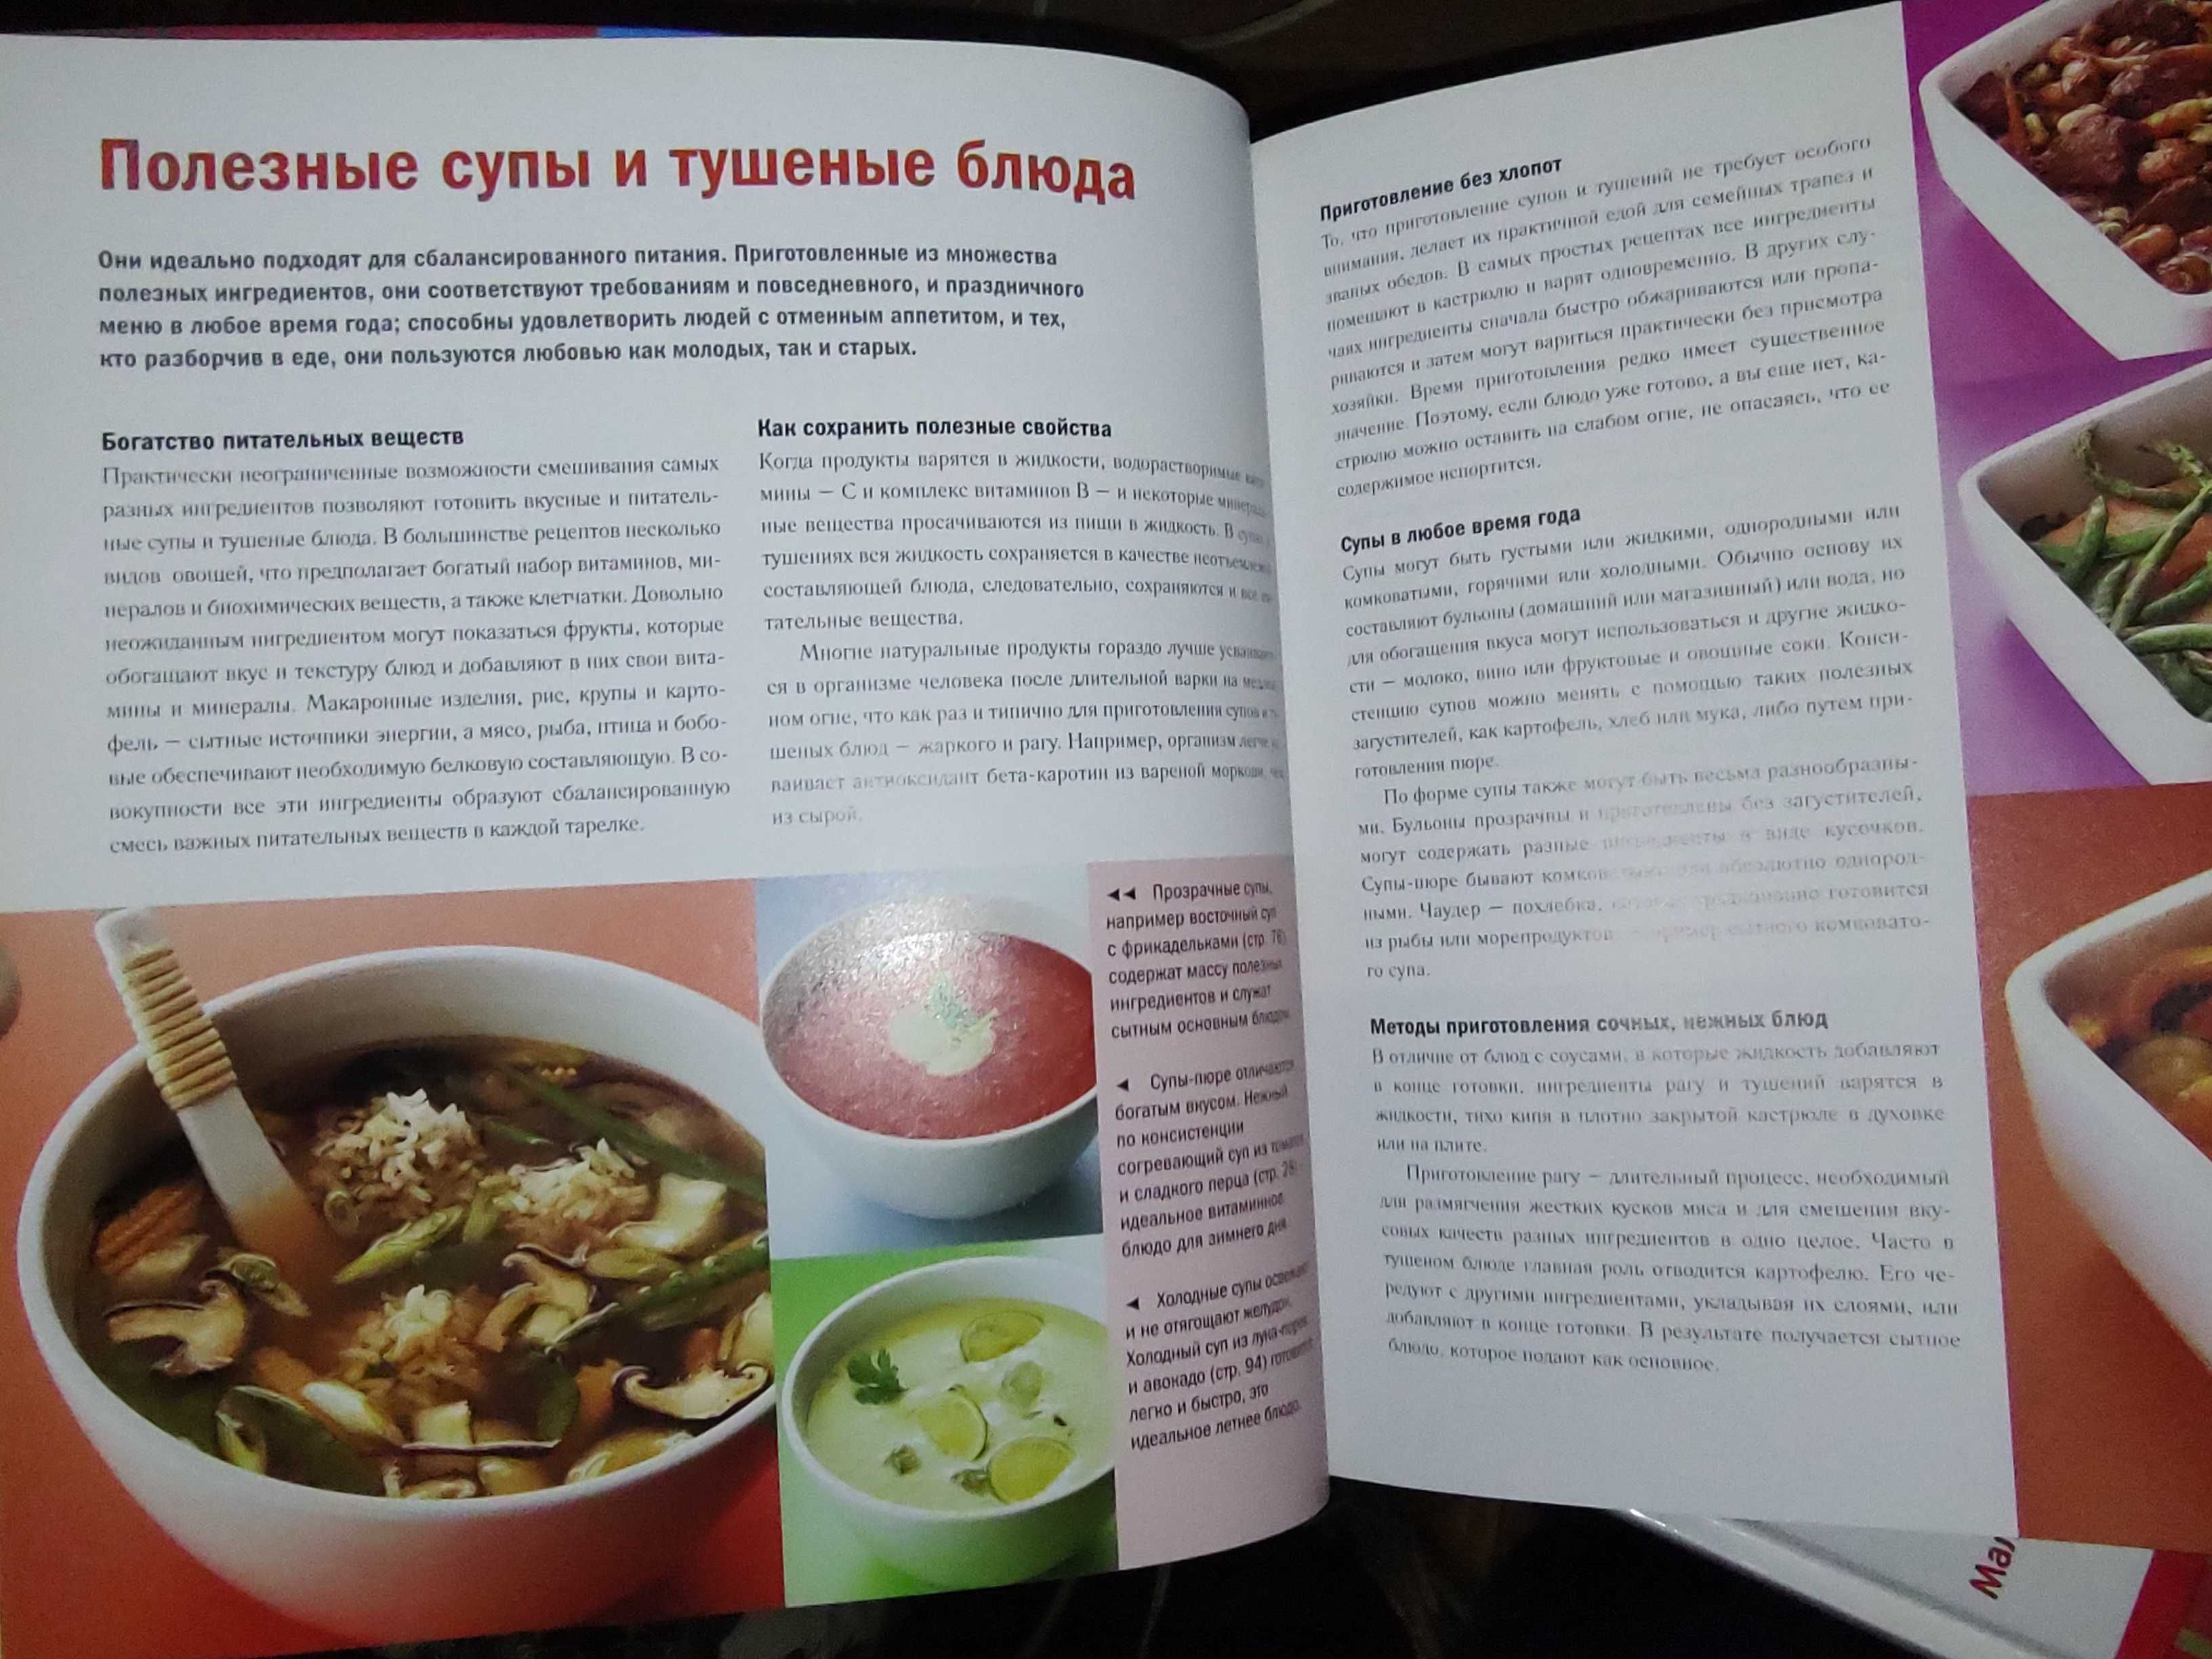 Супы и жаркое, отличная иллюстрированная кулинарная книга.